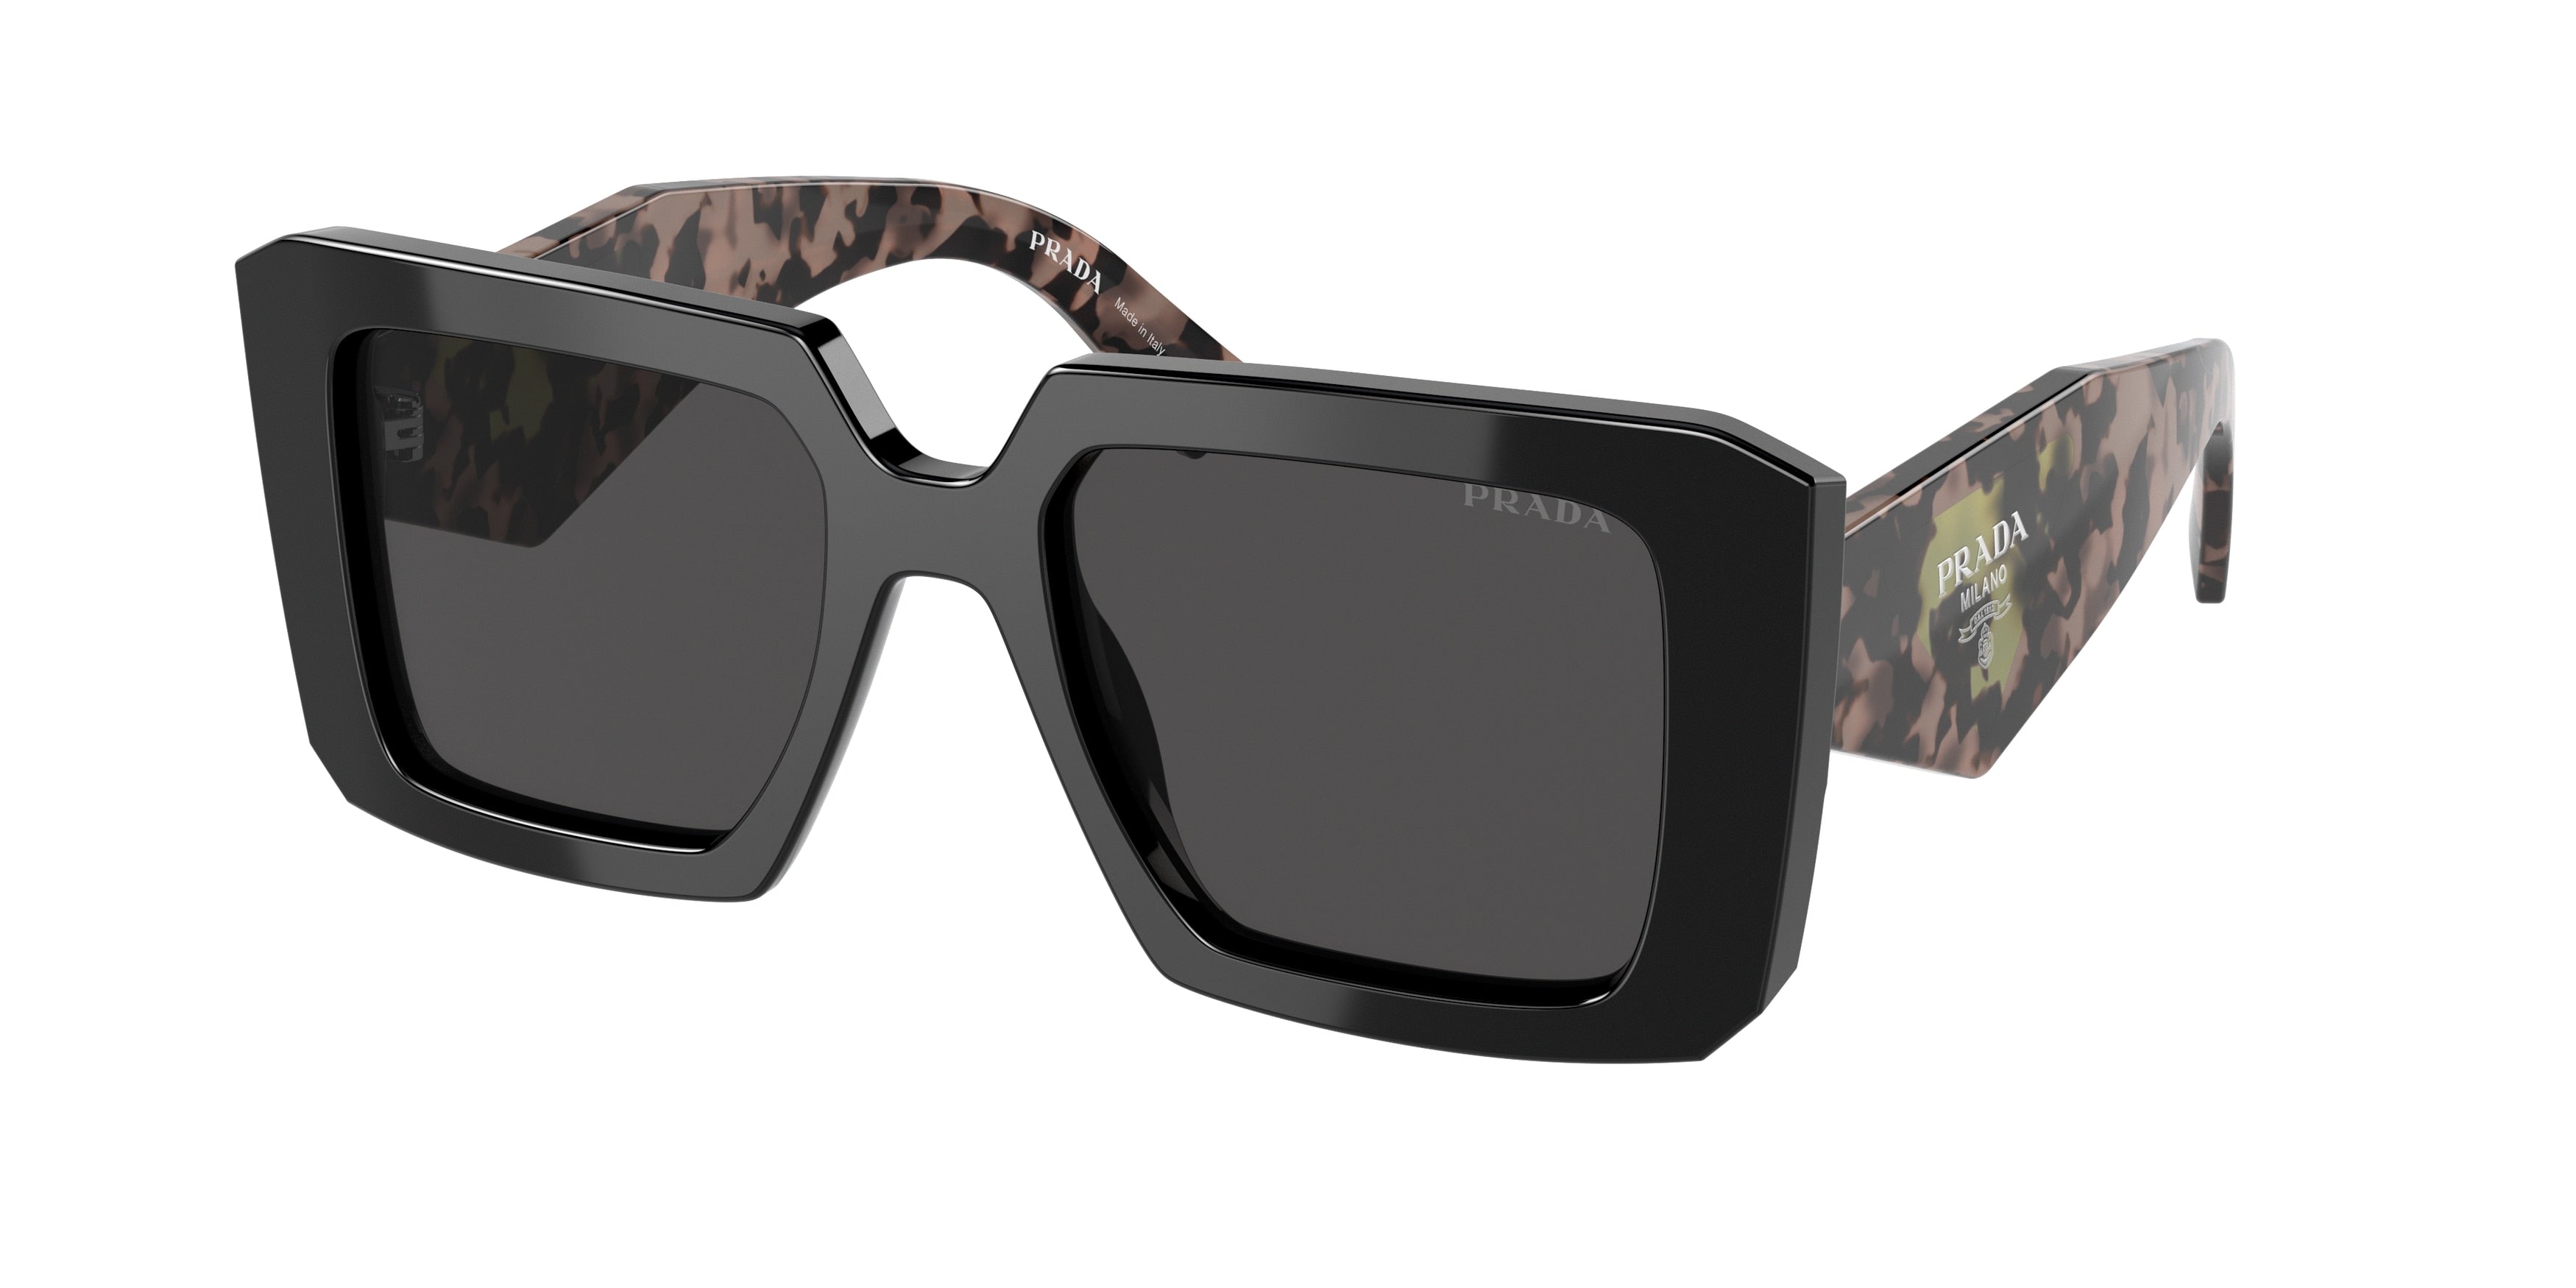 Share more than 250 prada square sunglasses latest